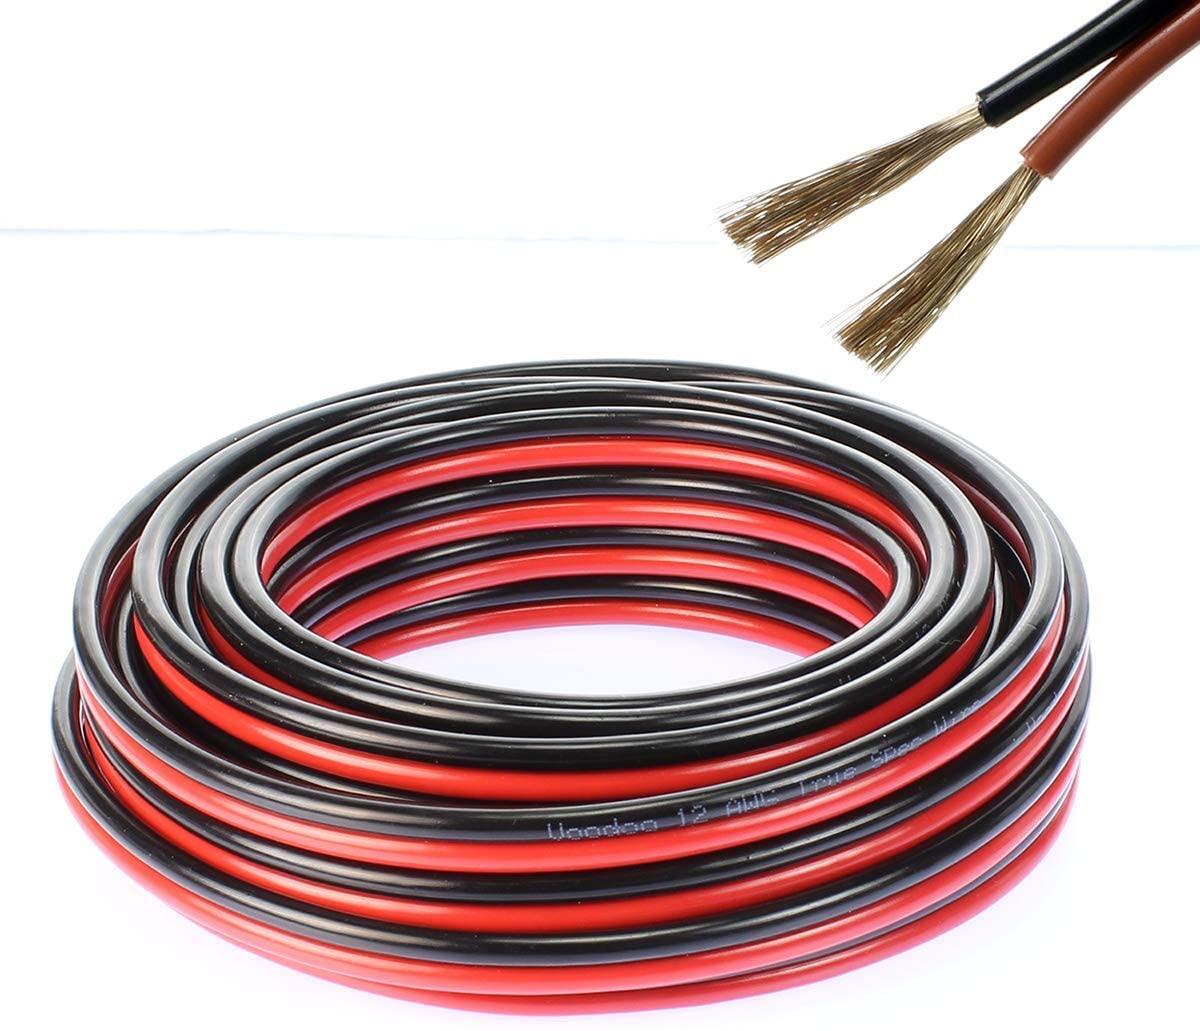 สายไฟ แดงดำ 15awg (1.5 mm²) สายลำโพง สายไฟคู่ สายคู่ electrical wire cable เครื่องเสียง รถยนต์ car a สี ชุด 100 เมตร สี ชุด 100 เมตร